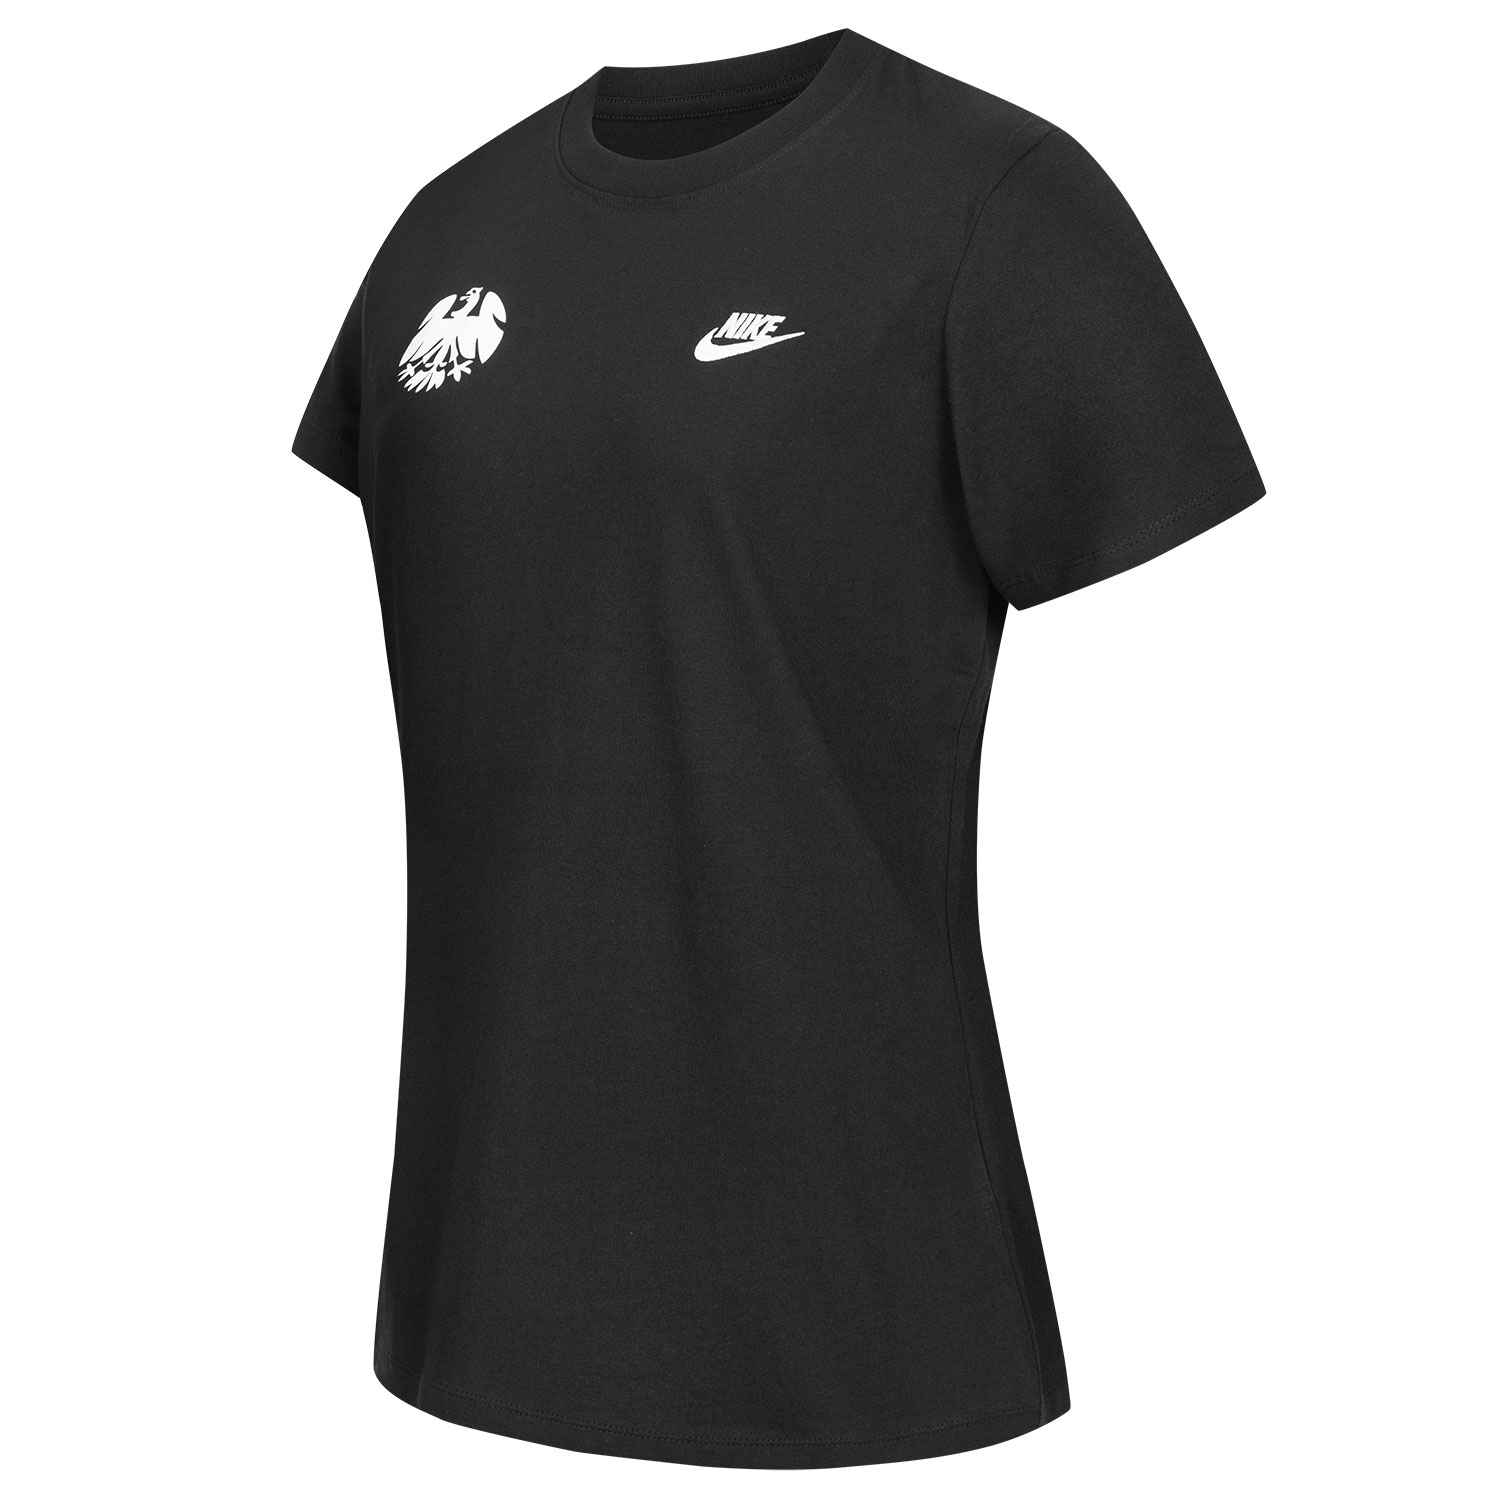 Bild 3: Nike Damen Shirt New Eighties black